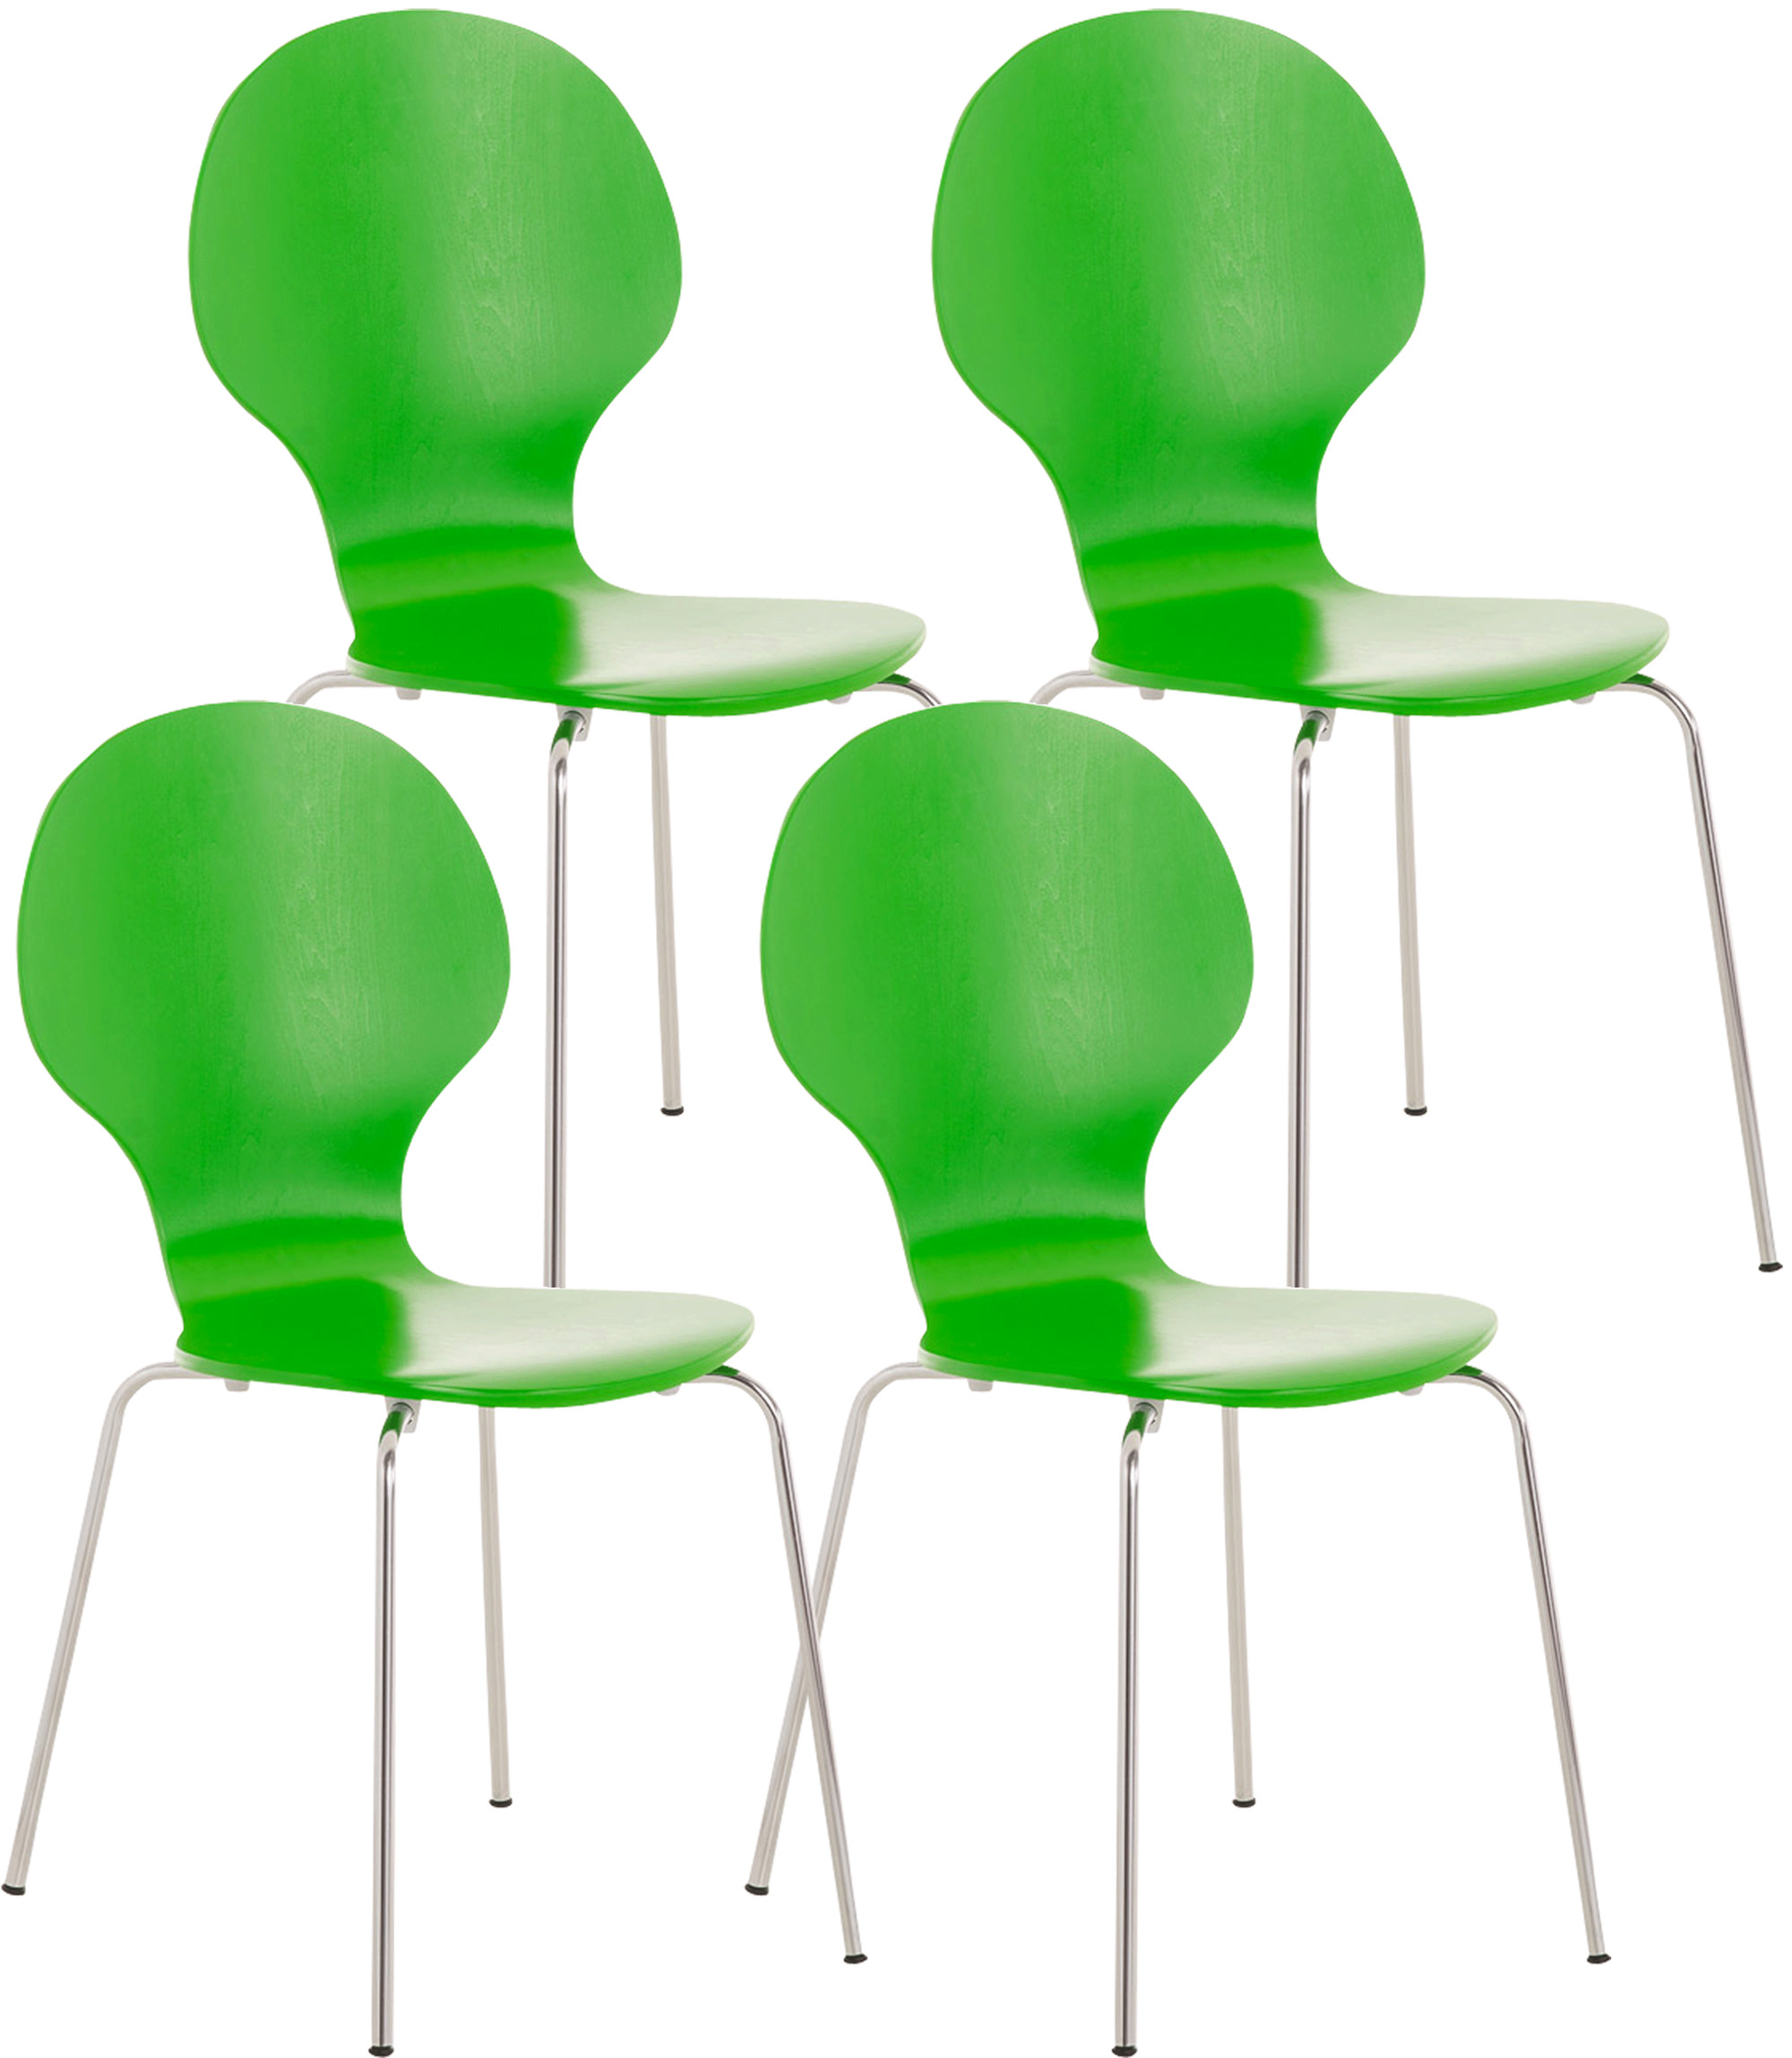 4x Stapelstuhl DIEGO grün